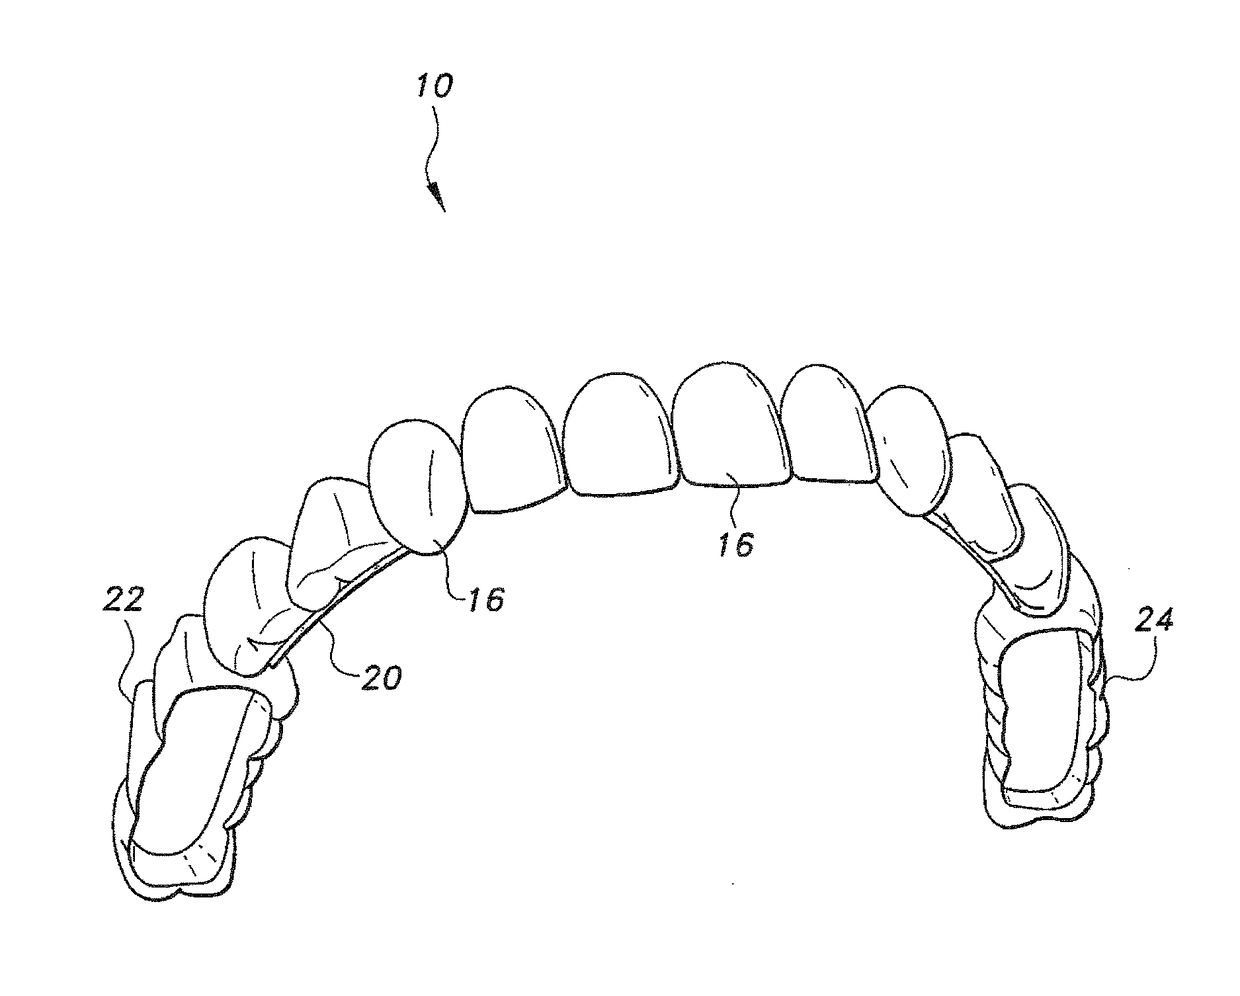 Removable veneers for teeth